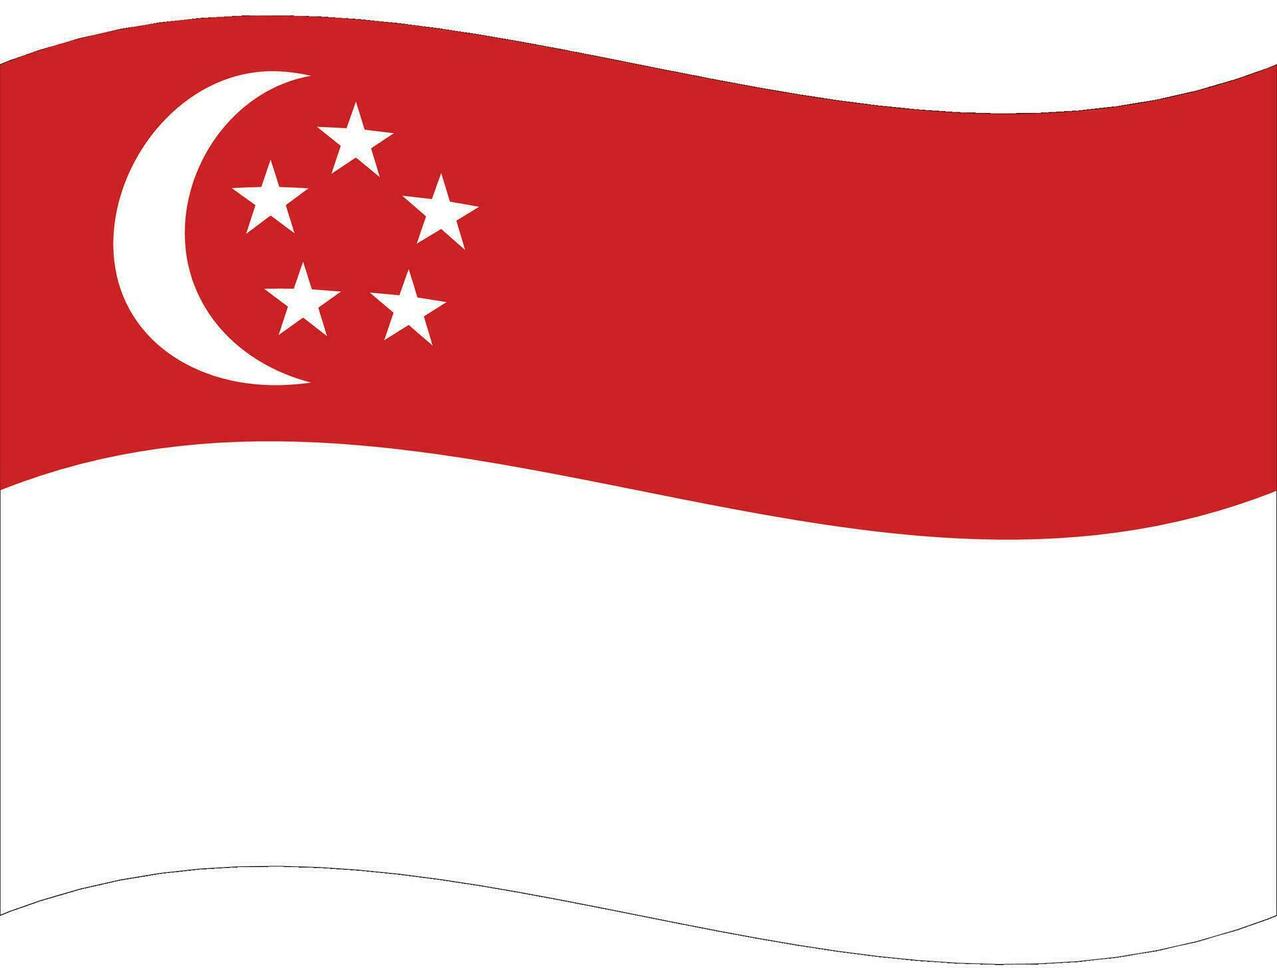 Singapore flag wave. Singapore flag. Flag of Singapore vector